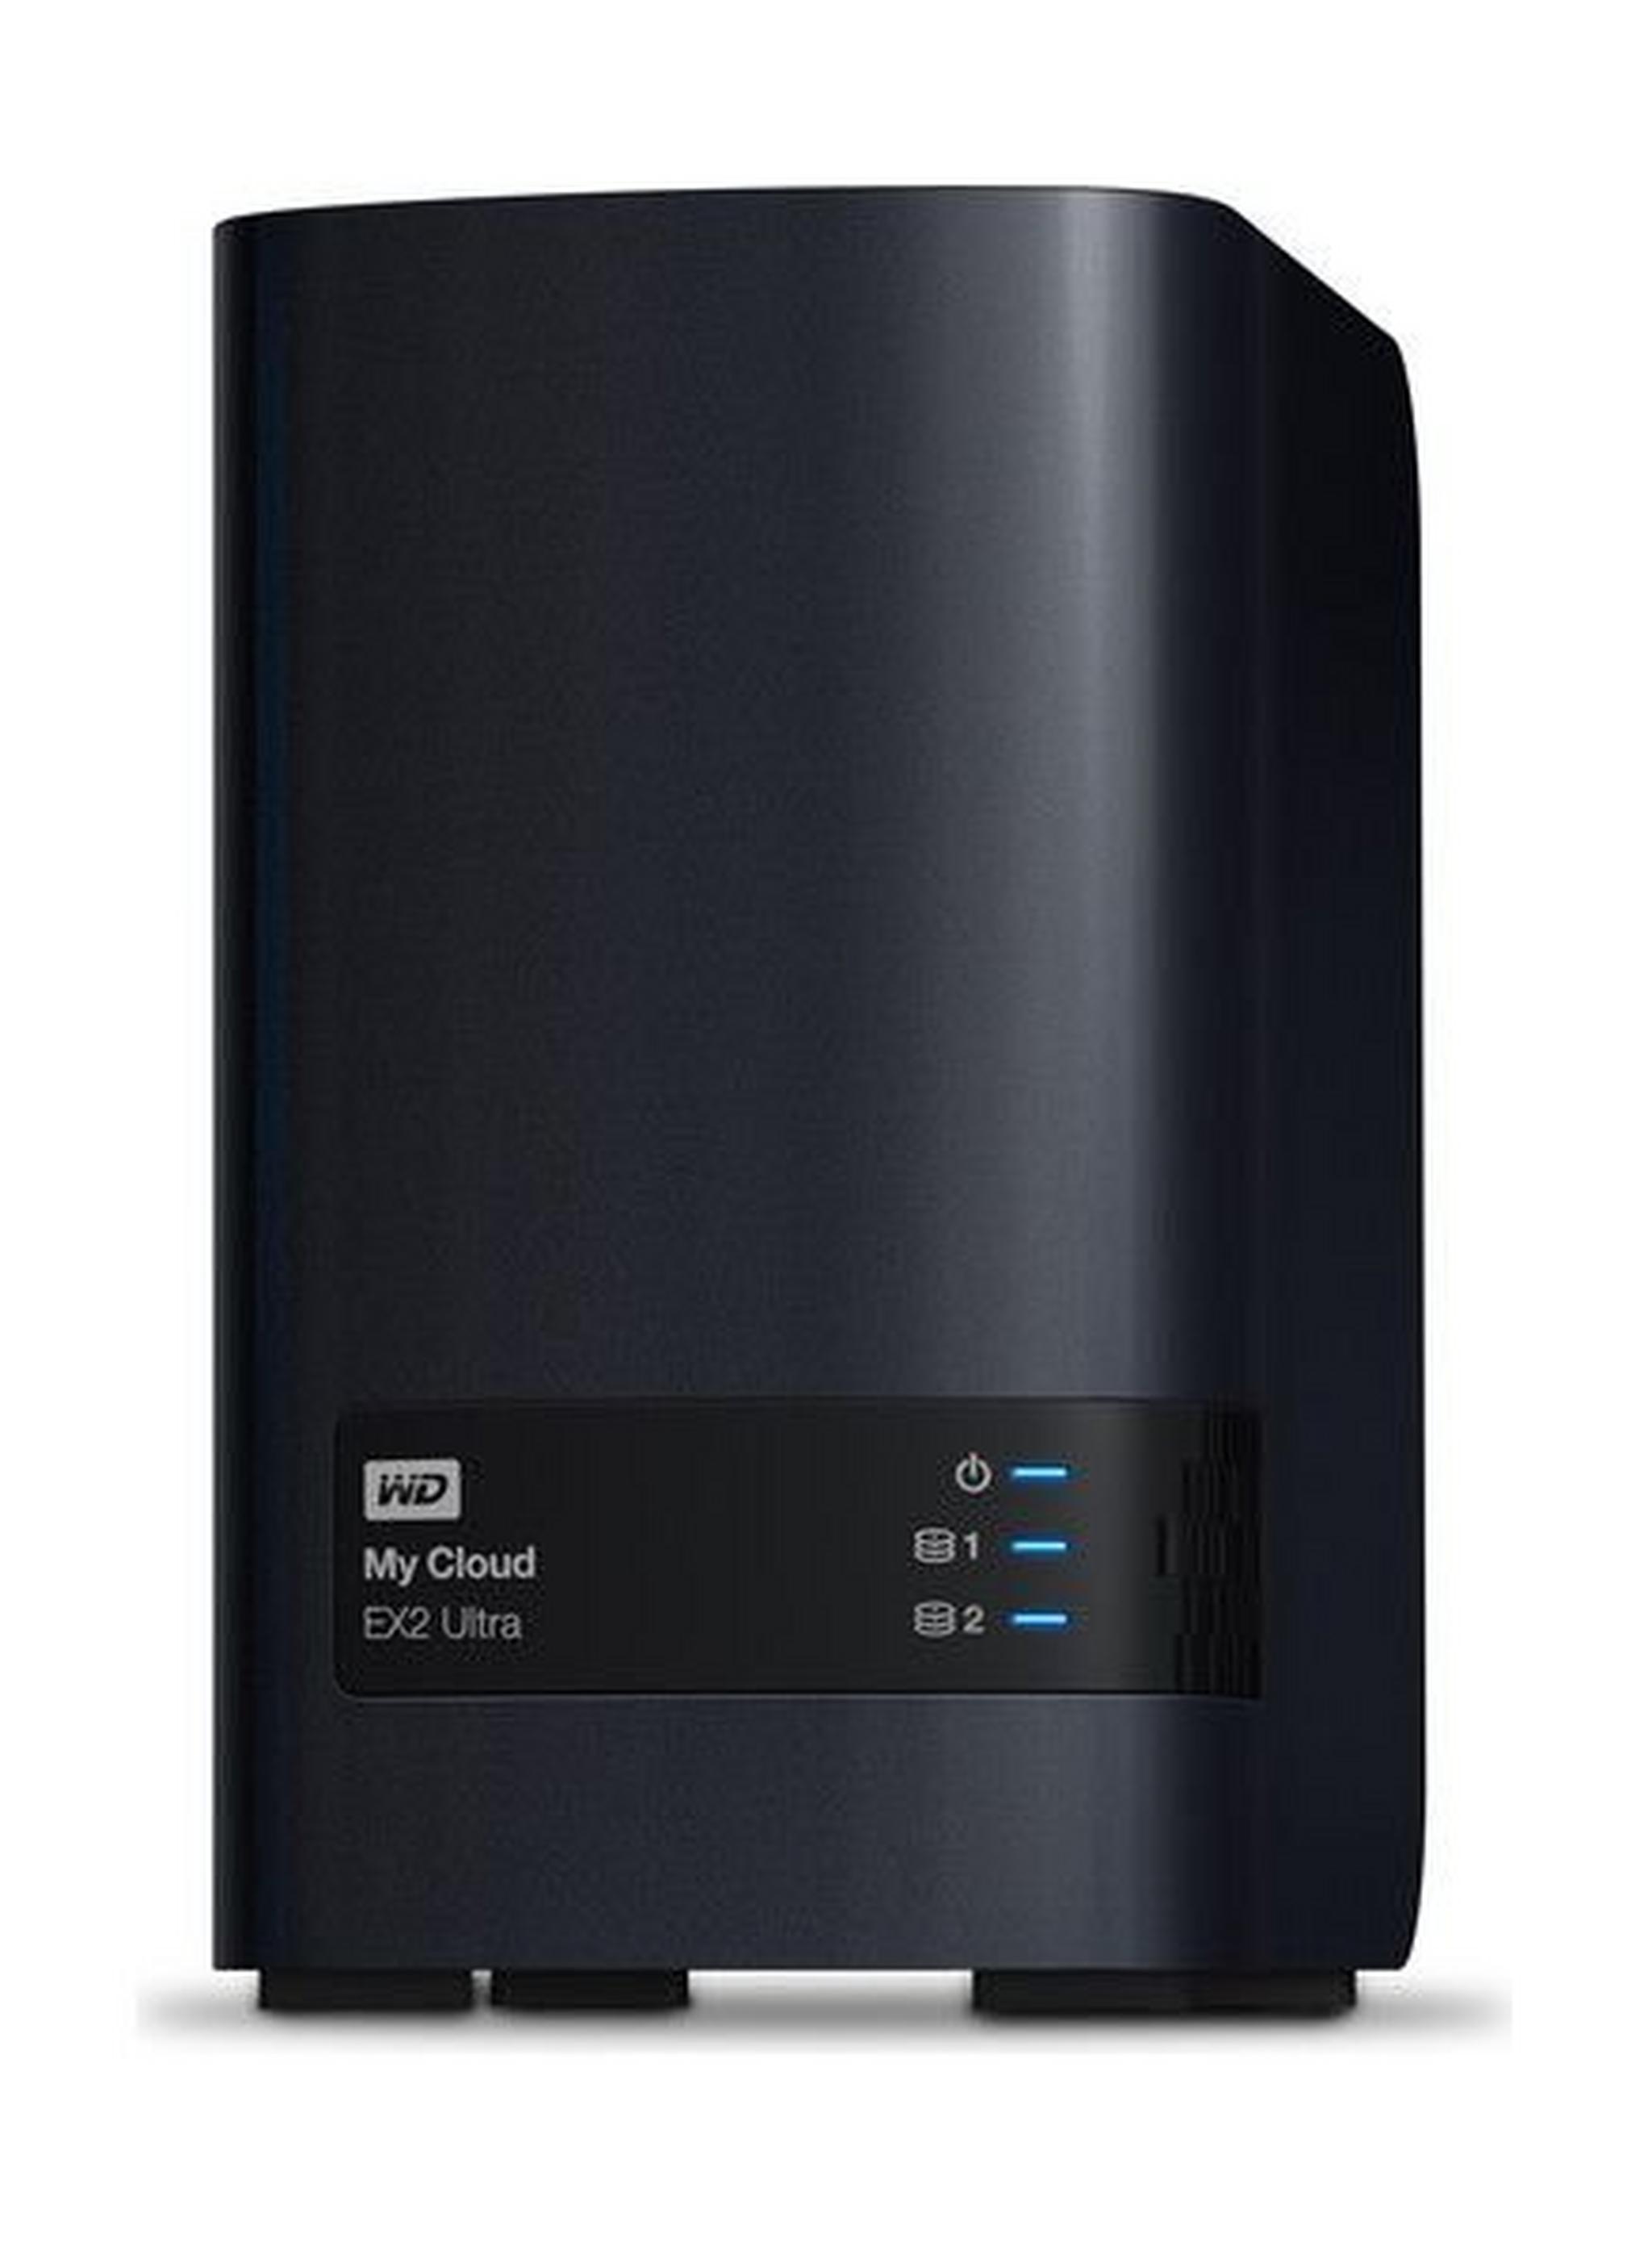 Western Digital My Cloud EX2 Ultra 8TB 2-Bay Personal Cloud Storage (WDBVBZ0080JCH)